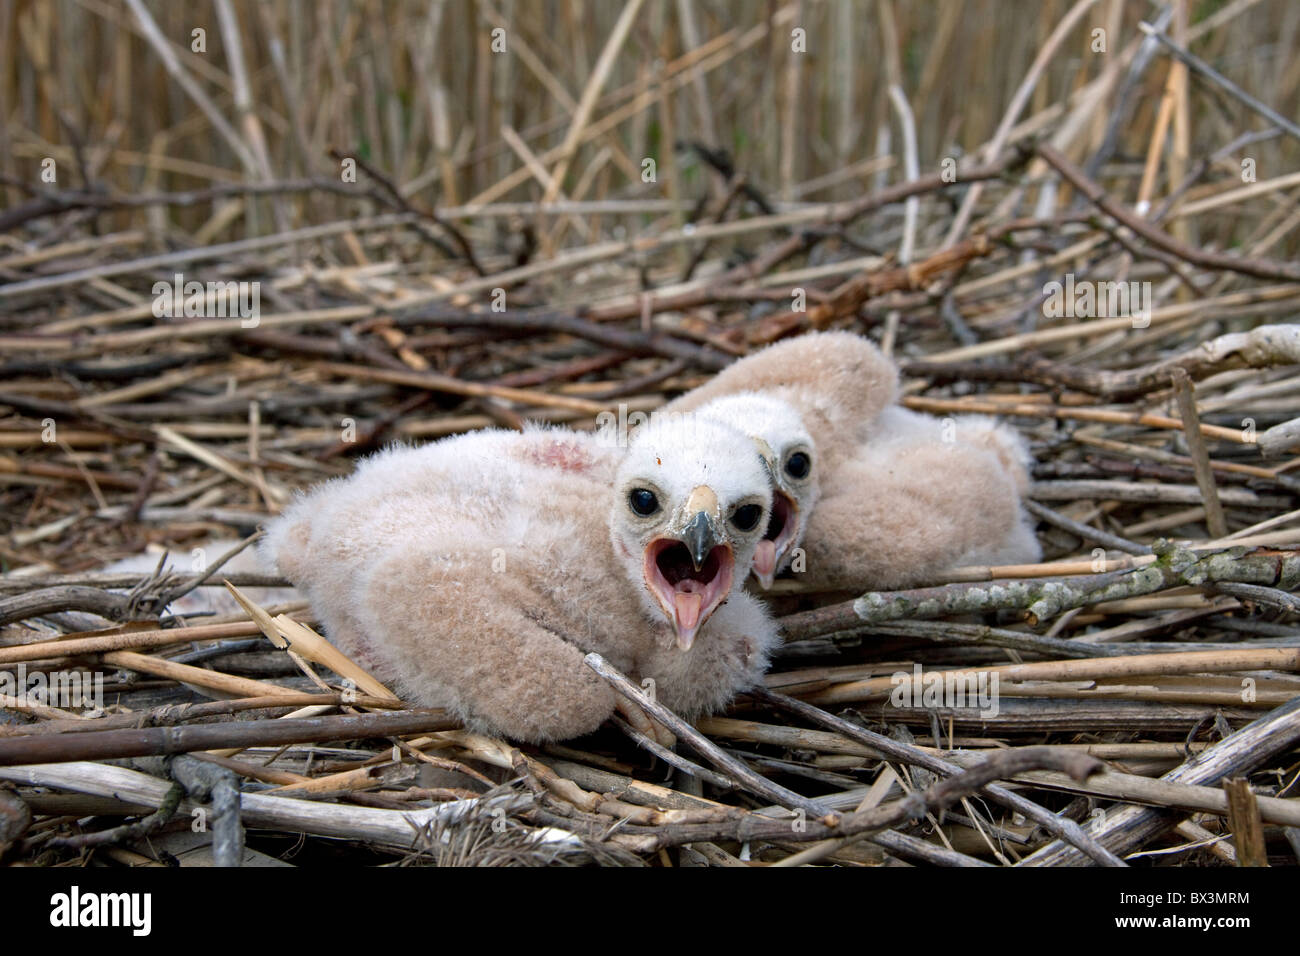 Marsh Harrier (Circus aeruginosus) chicks in nest, Sweden Stock Photo